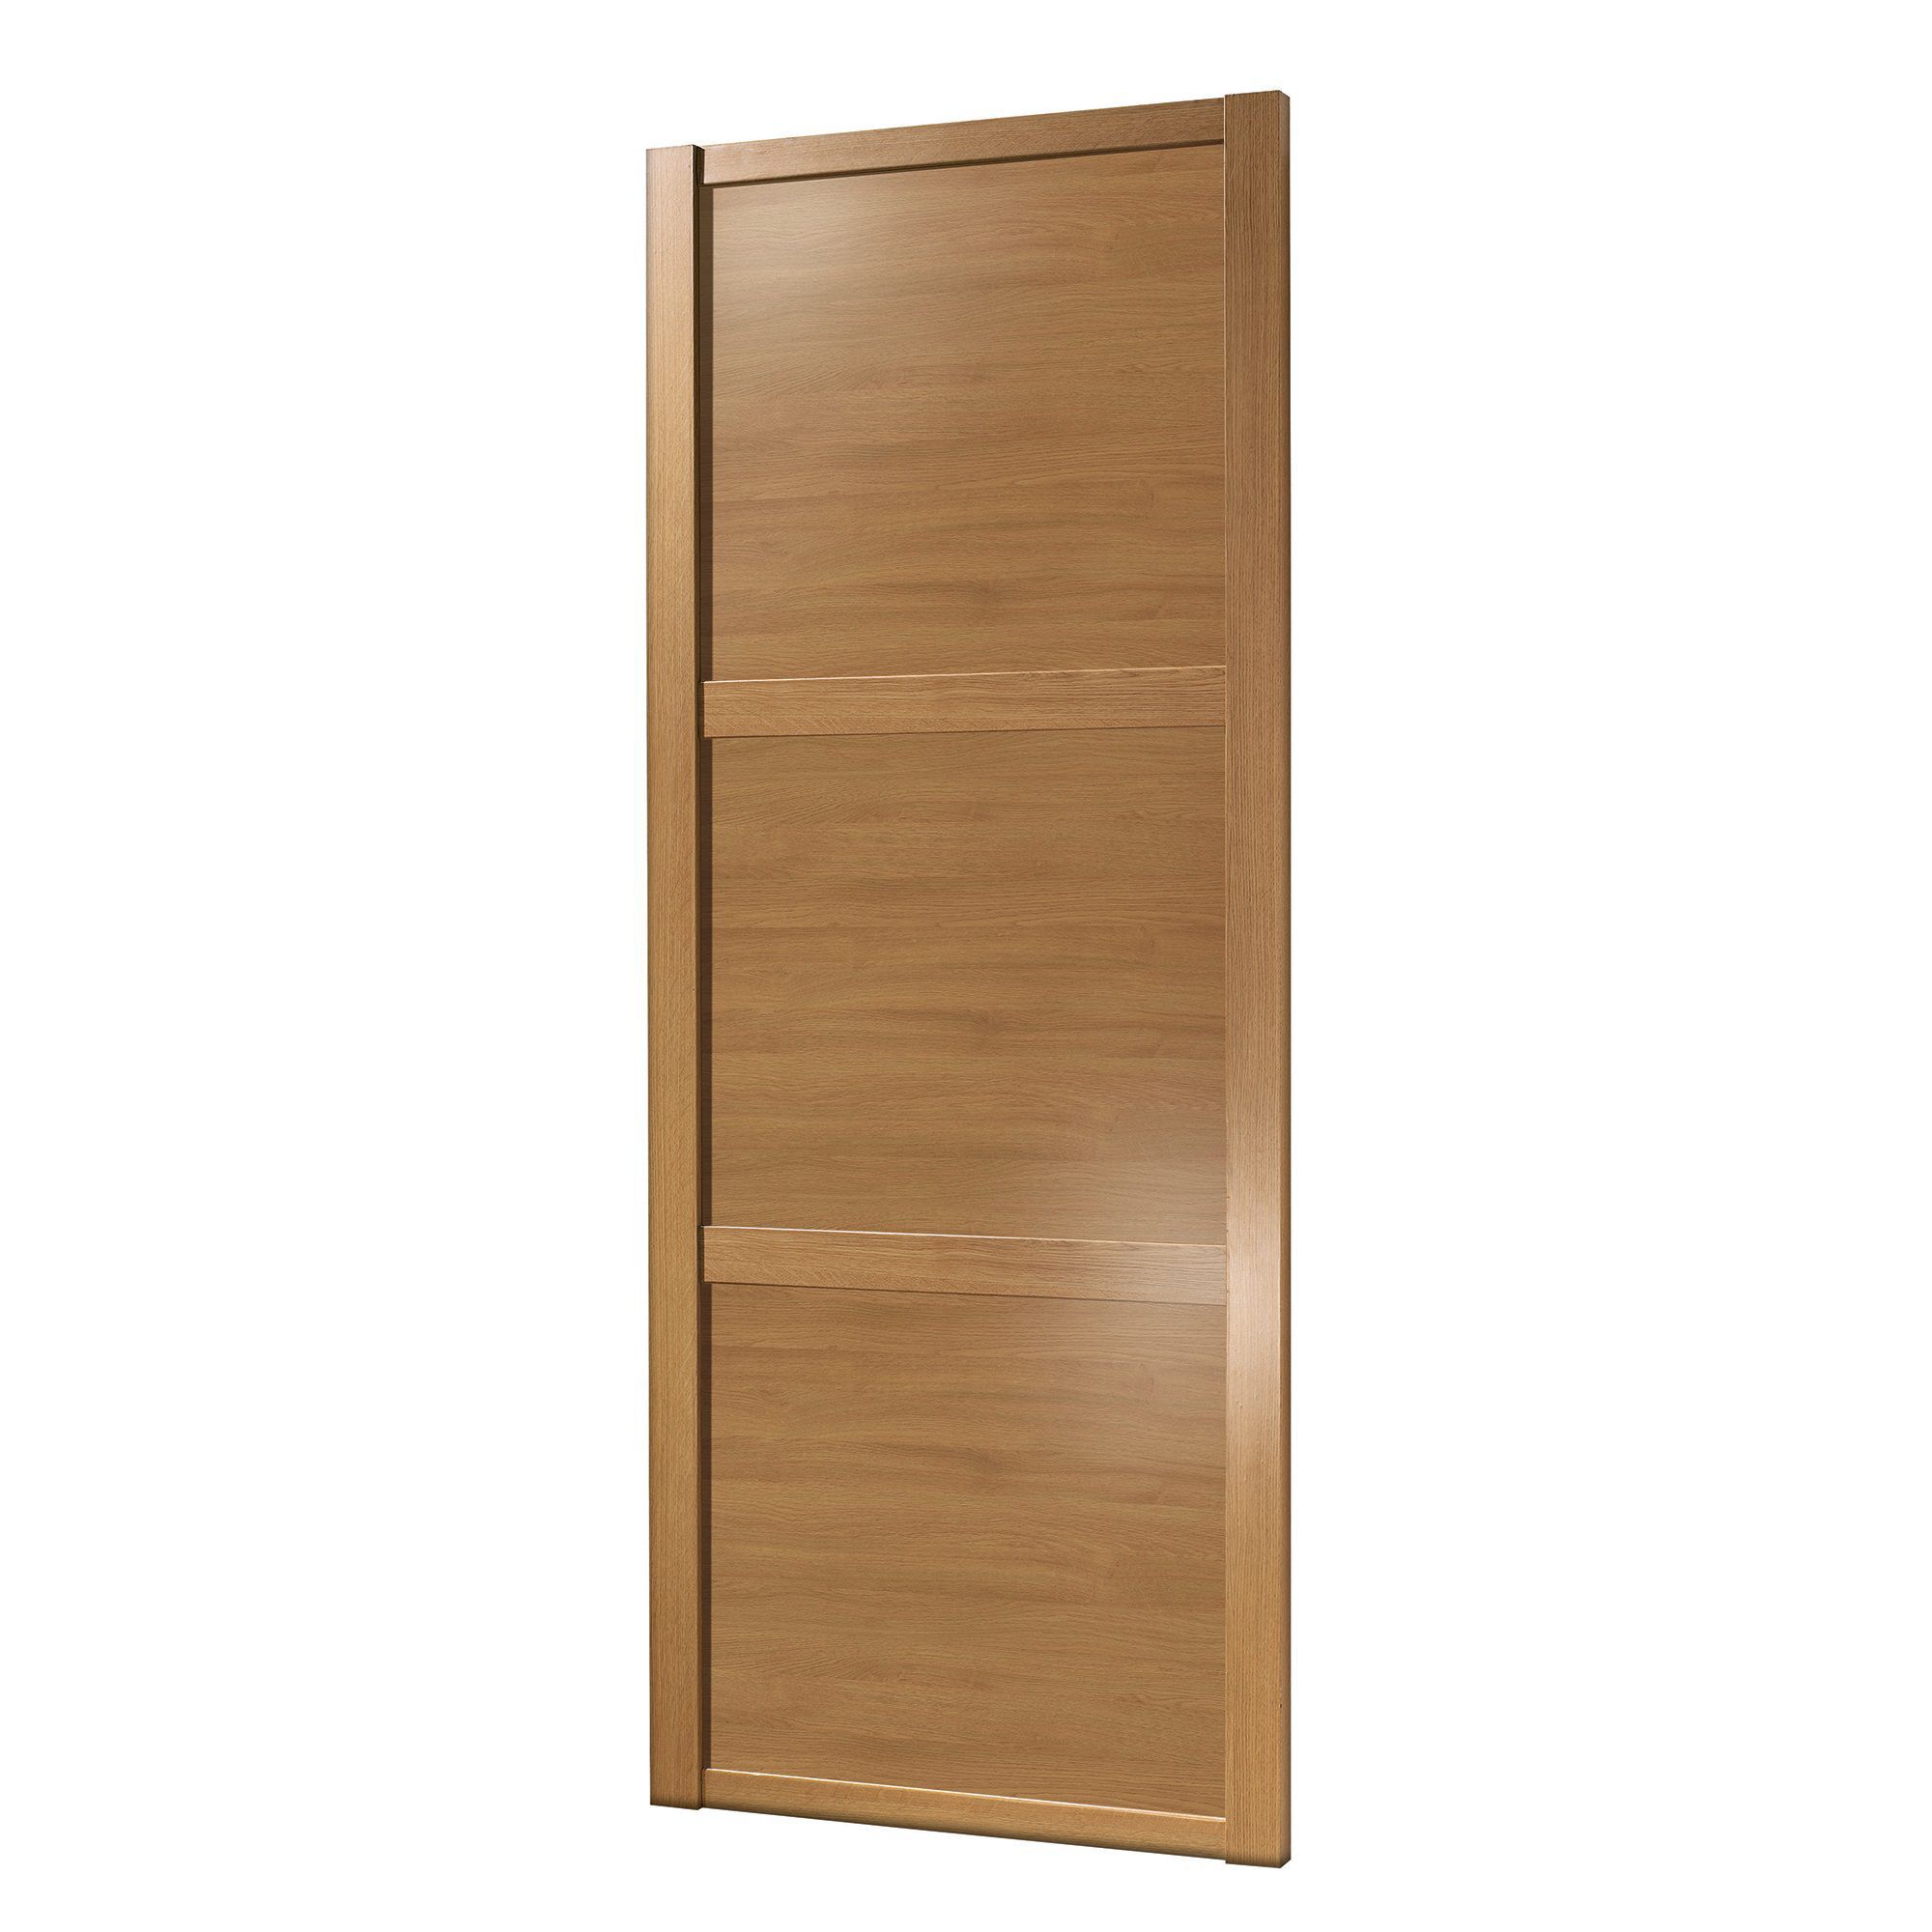 Spacepro Classic Shaker Oak effect Sliding wardrobe door (H) 2220mm x (W) 914mm